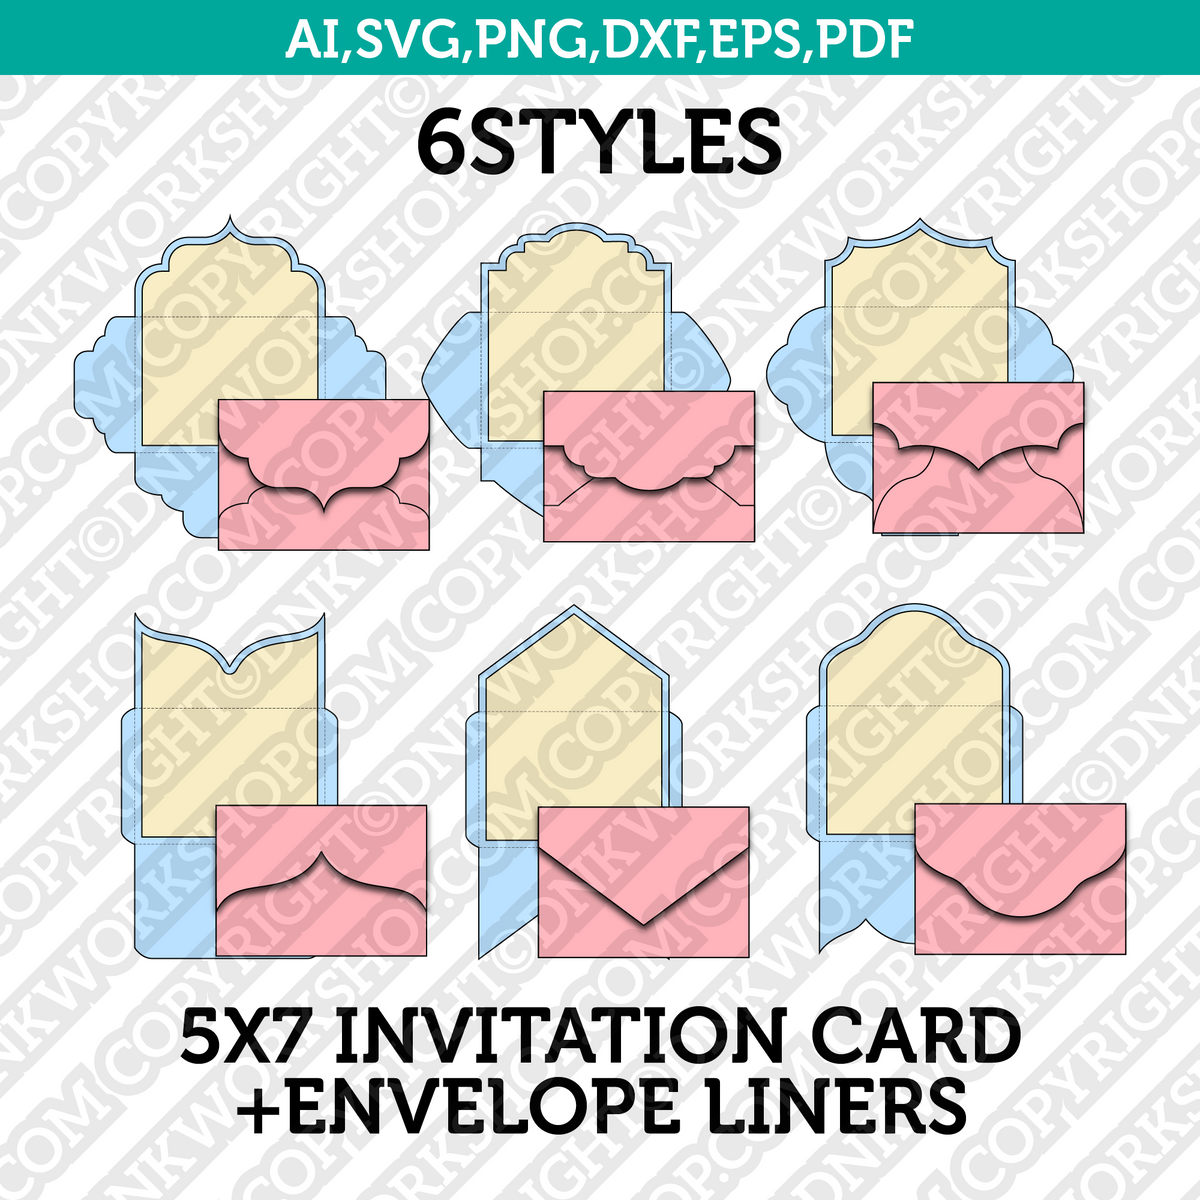 5x7 Envelope SVG - SVG Envelope Cutting File Template